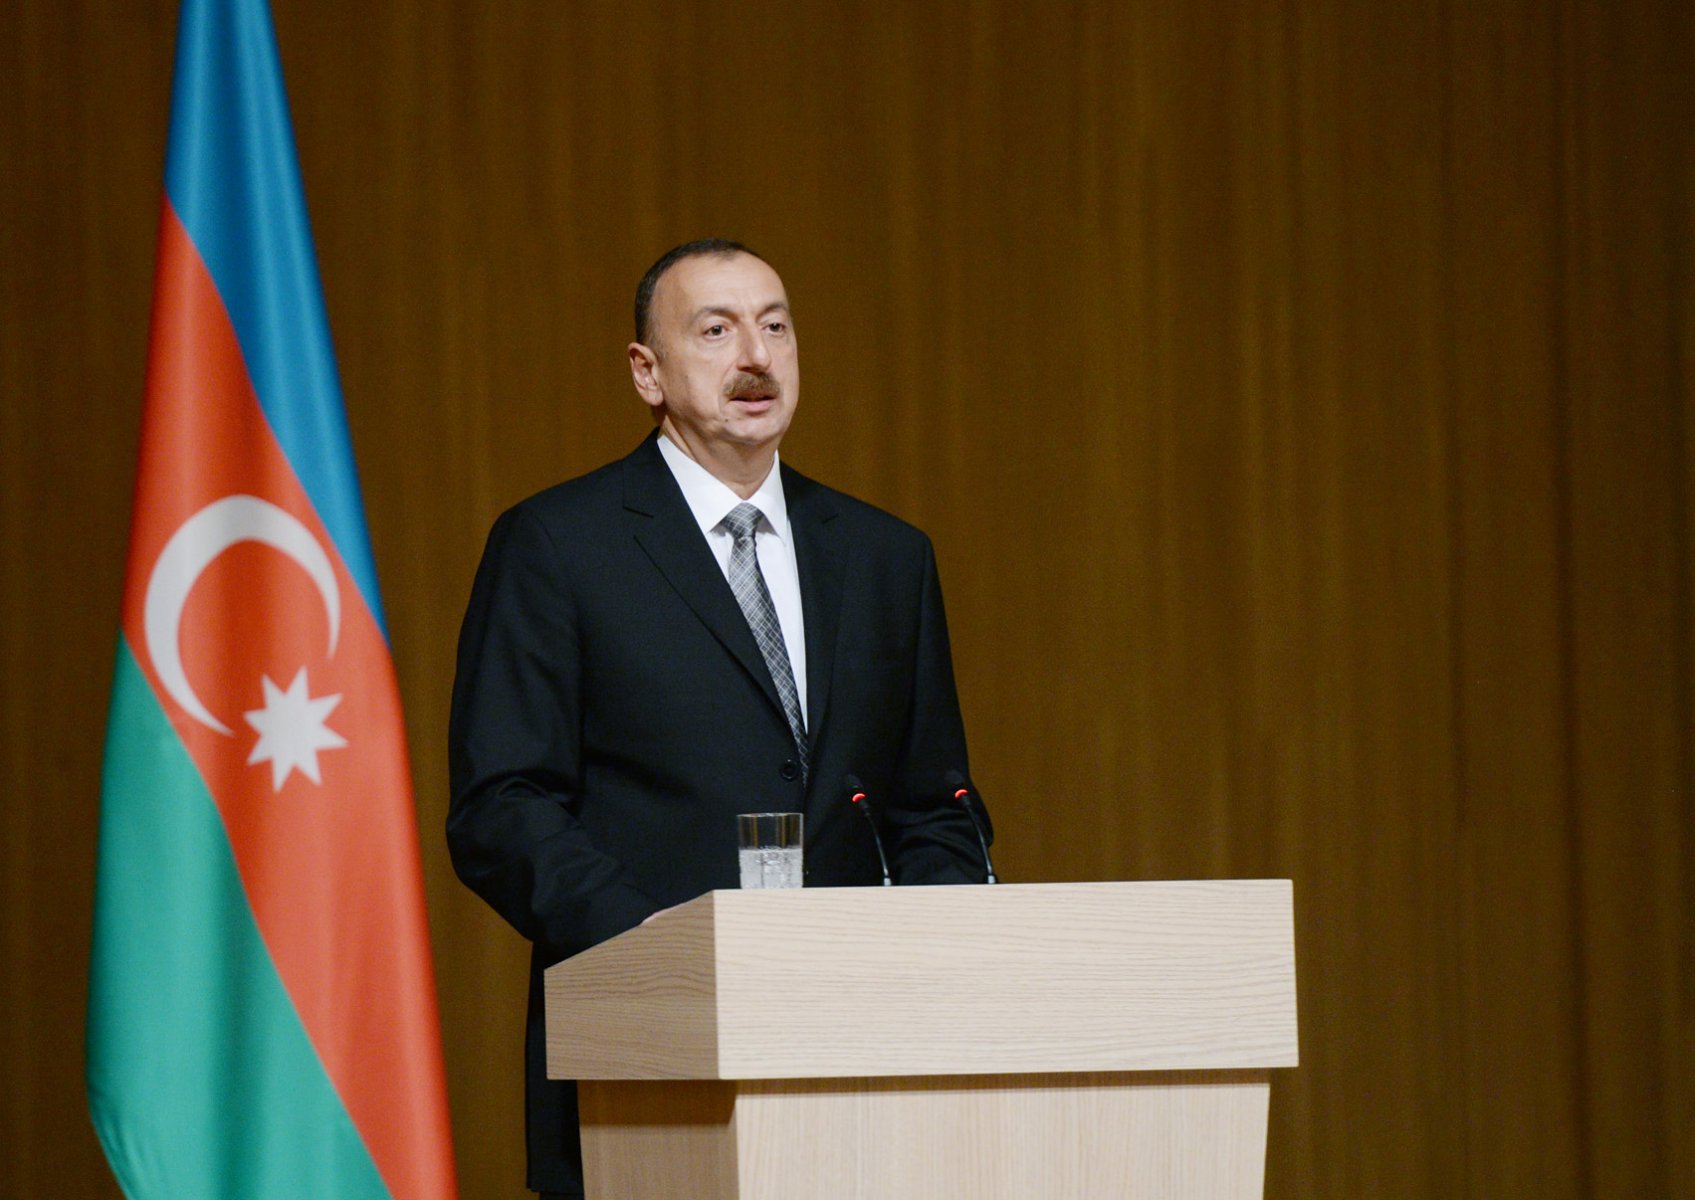 Azərbaycan Prezidenti: “Qarabağ münaqişəsi həll olunub, bu bizim ərazimizdir, hamı tərəfindən tanınır”